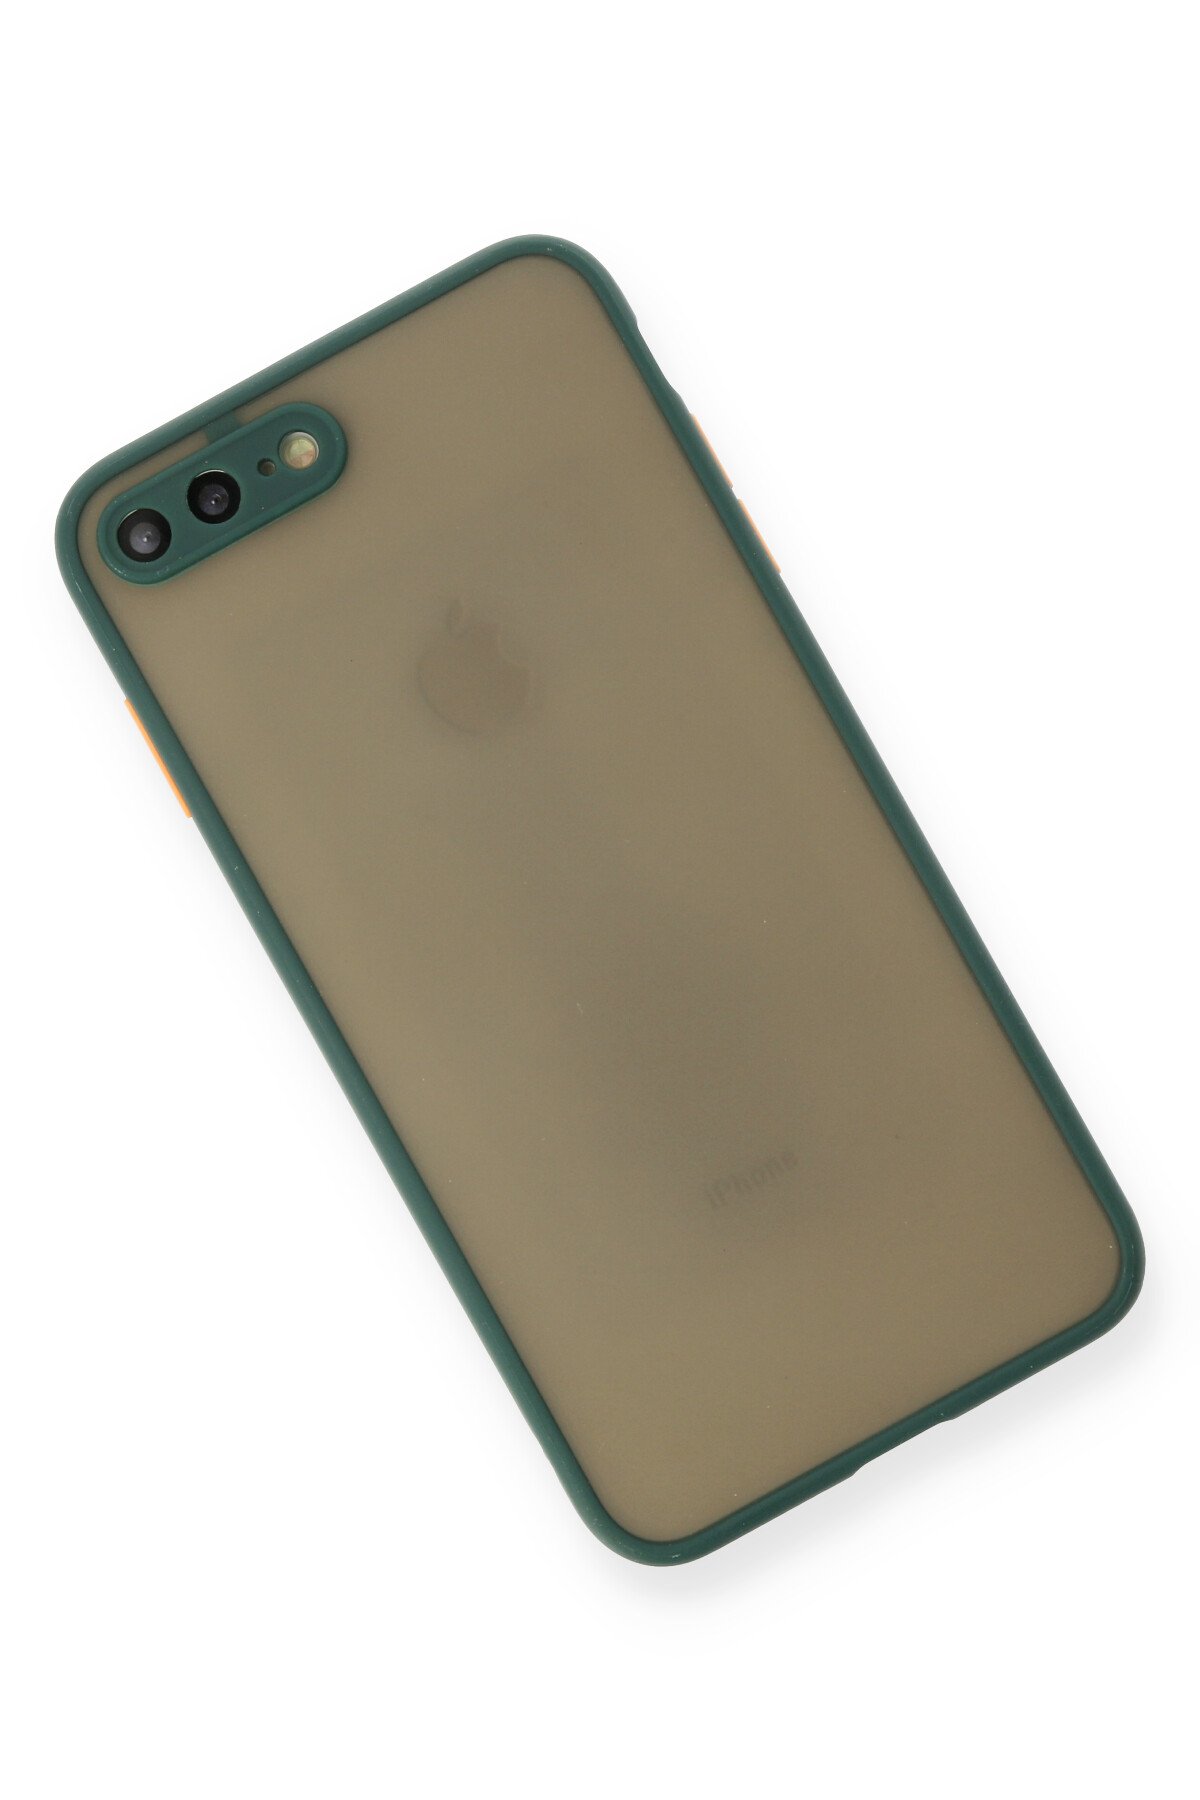 NewFace Newface iPhone 7 Plus Kılıf Montreal Silikon Kapak - Yeşil